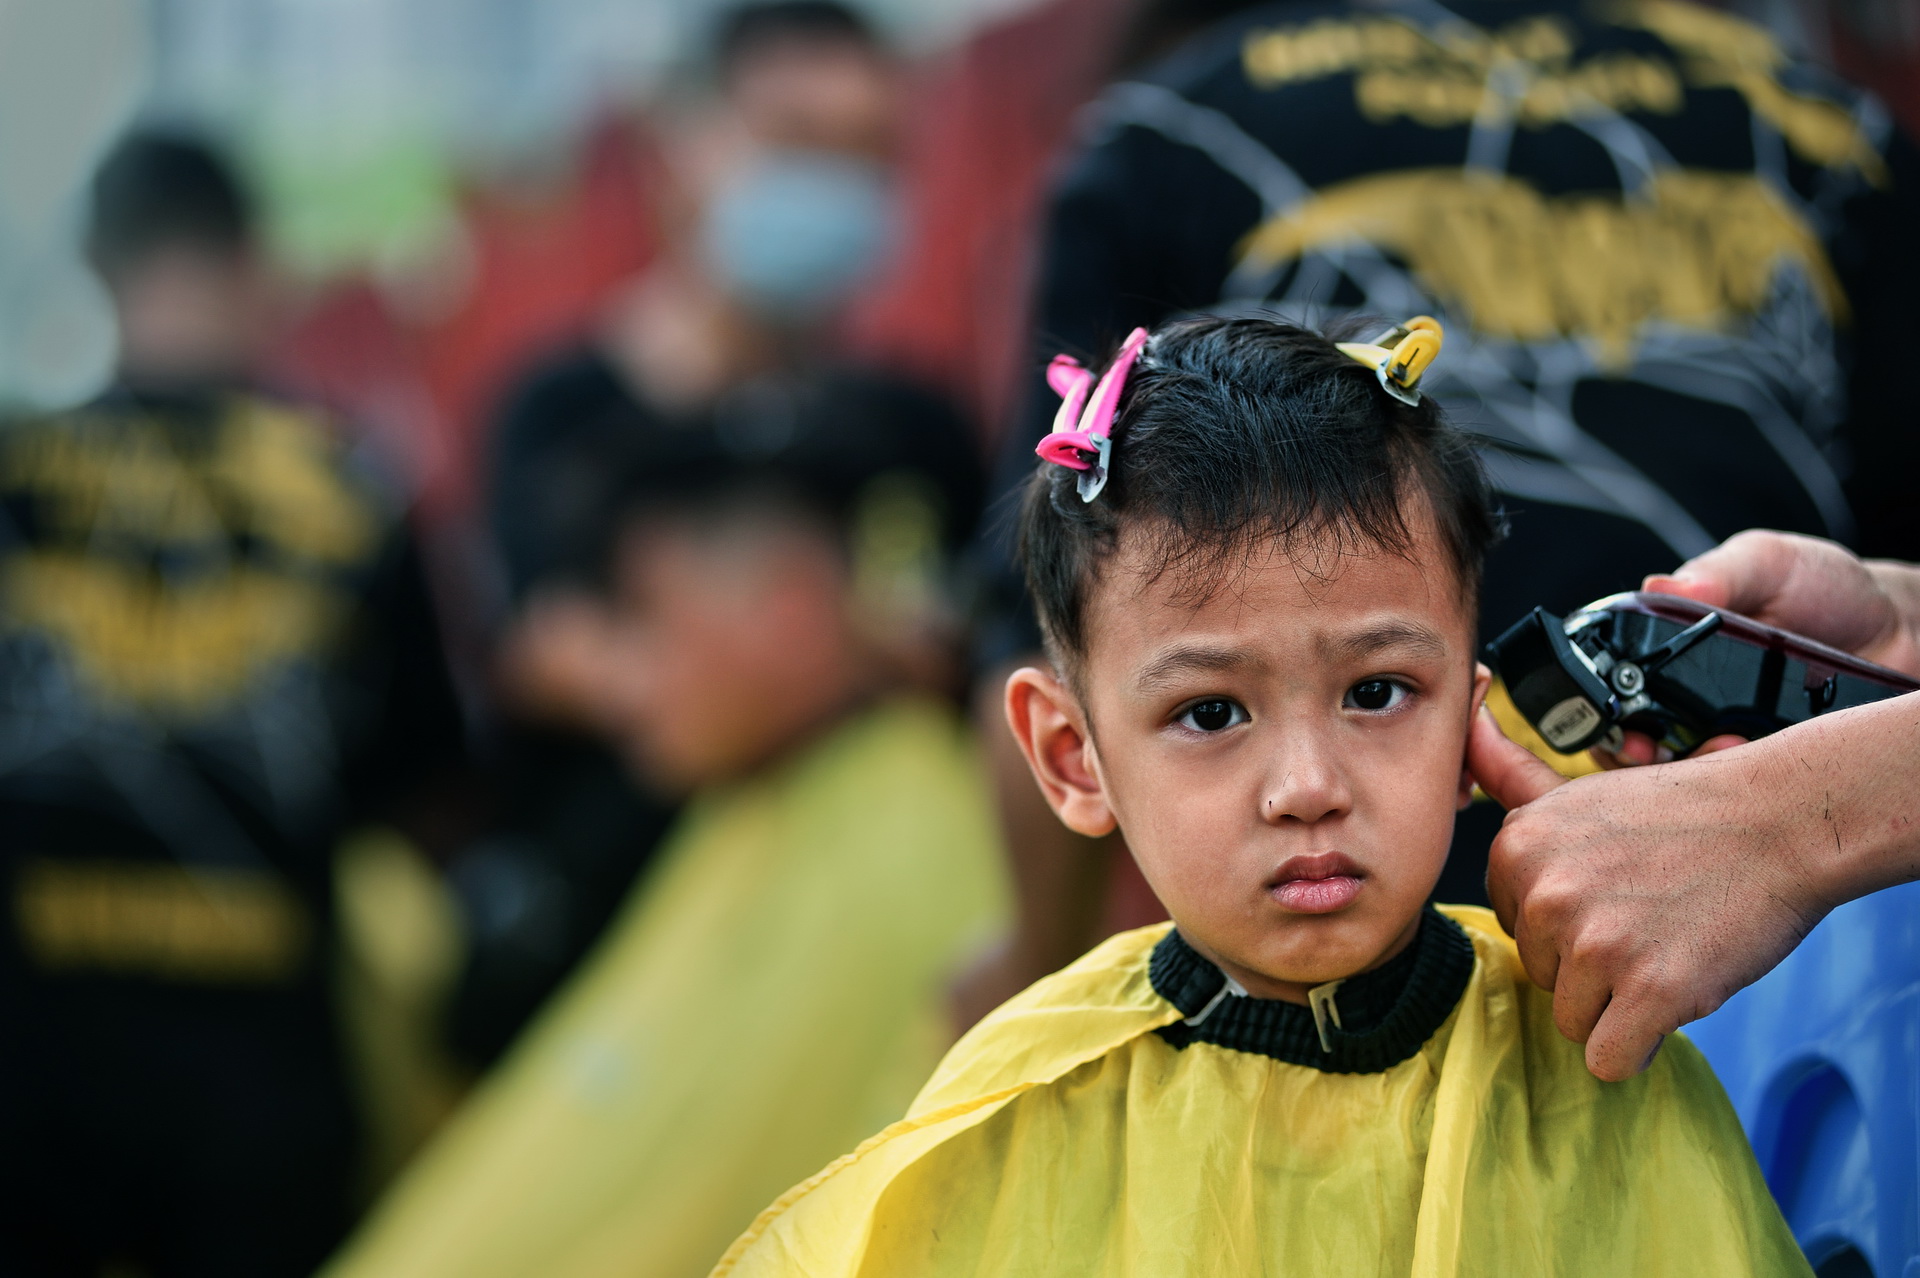 Top 5 cửa hàng cắt tóc nam tại Đà Nẵng - Uy tín, chất lượng hàng đầu